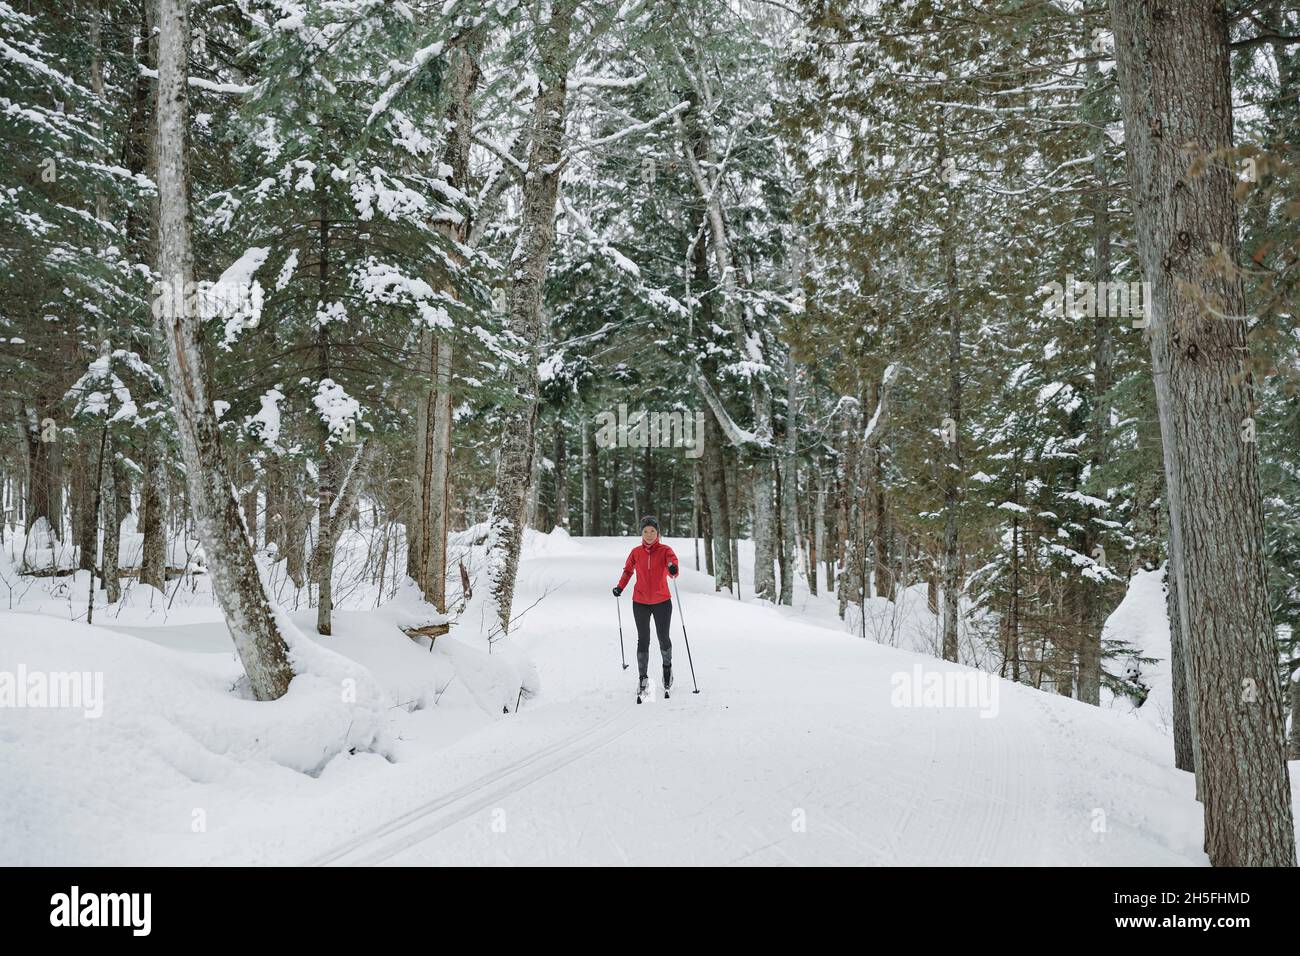 Ski de fond ski nordique classique en forêt.Femme en hiver faisant des activités sportives d'hiver amusantes dans la neige sur le ski de fond à Banque D'Images